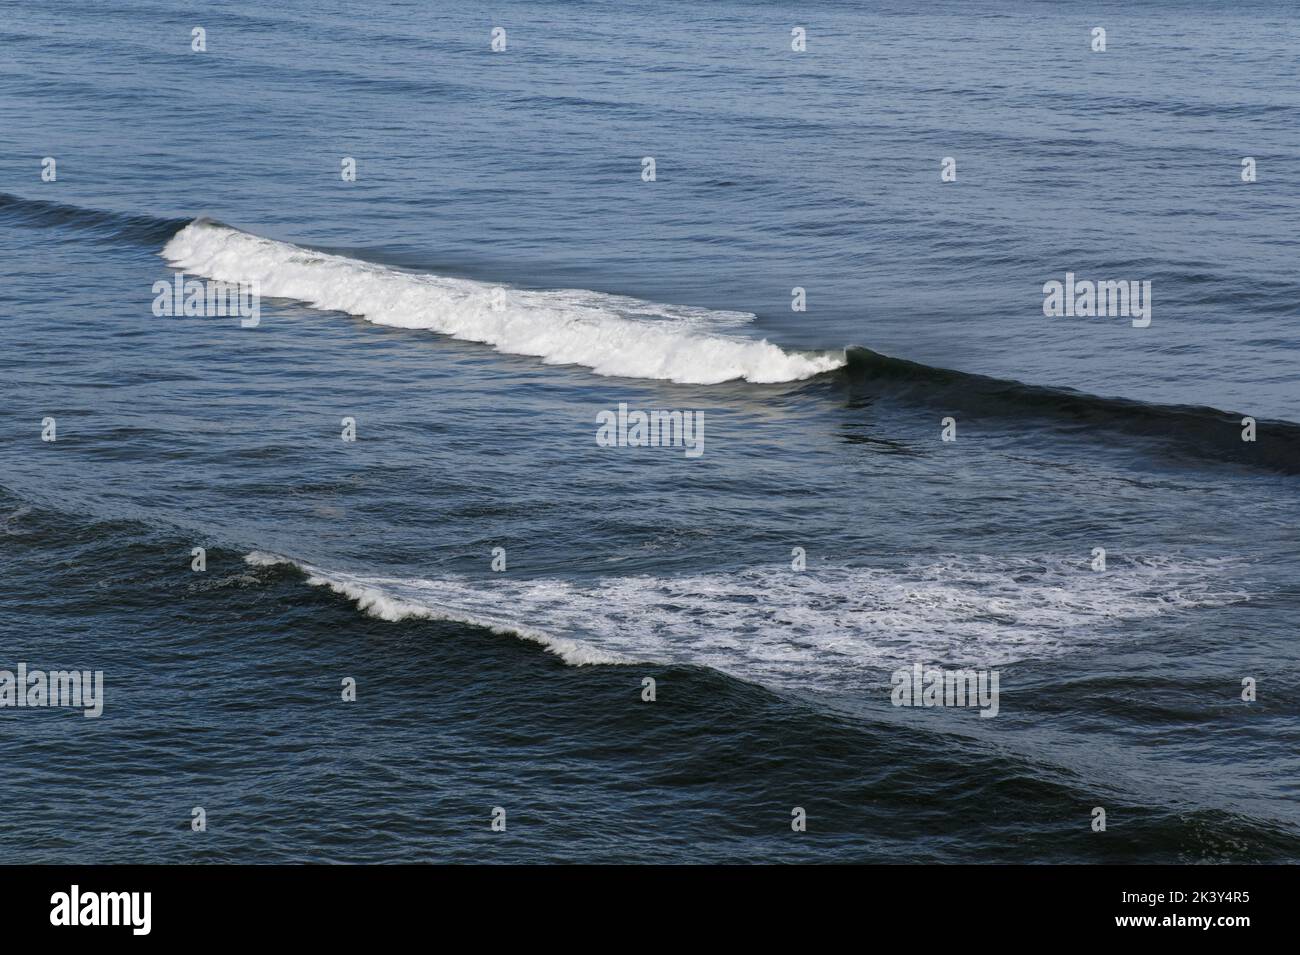 Les vagues se déferlent et se crêtes avant d'atteindre le rivage. Banque D'Images